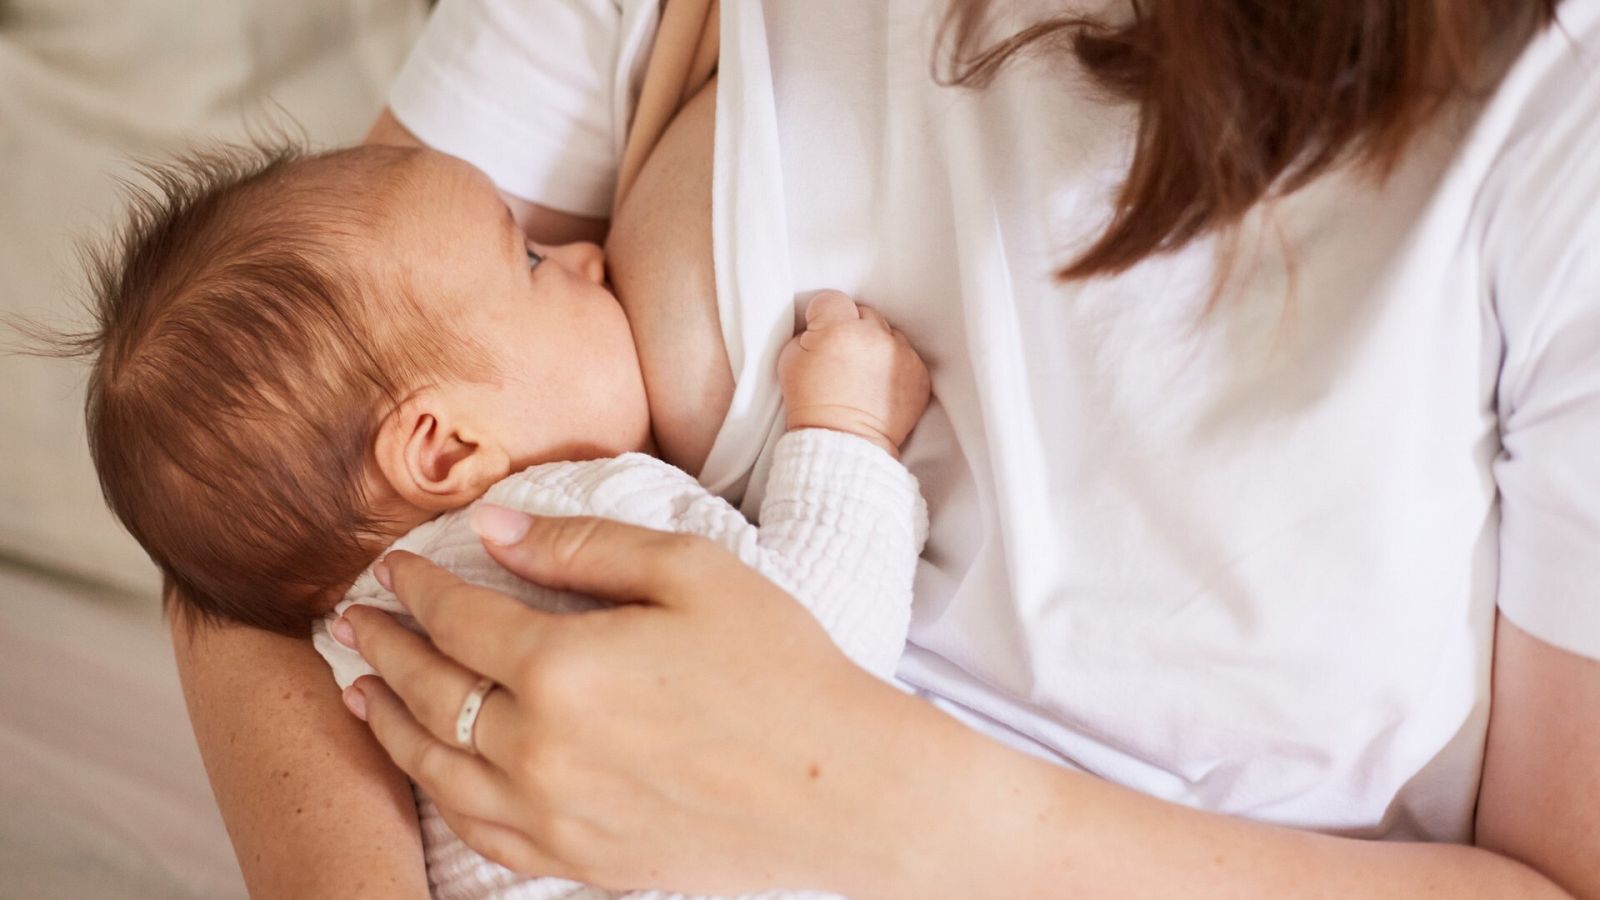 Culpa y presión social, la otra cara de la lactancia materna